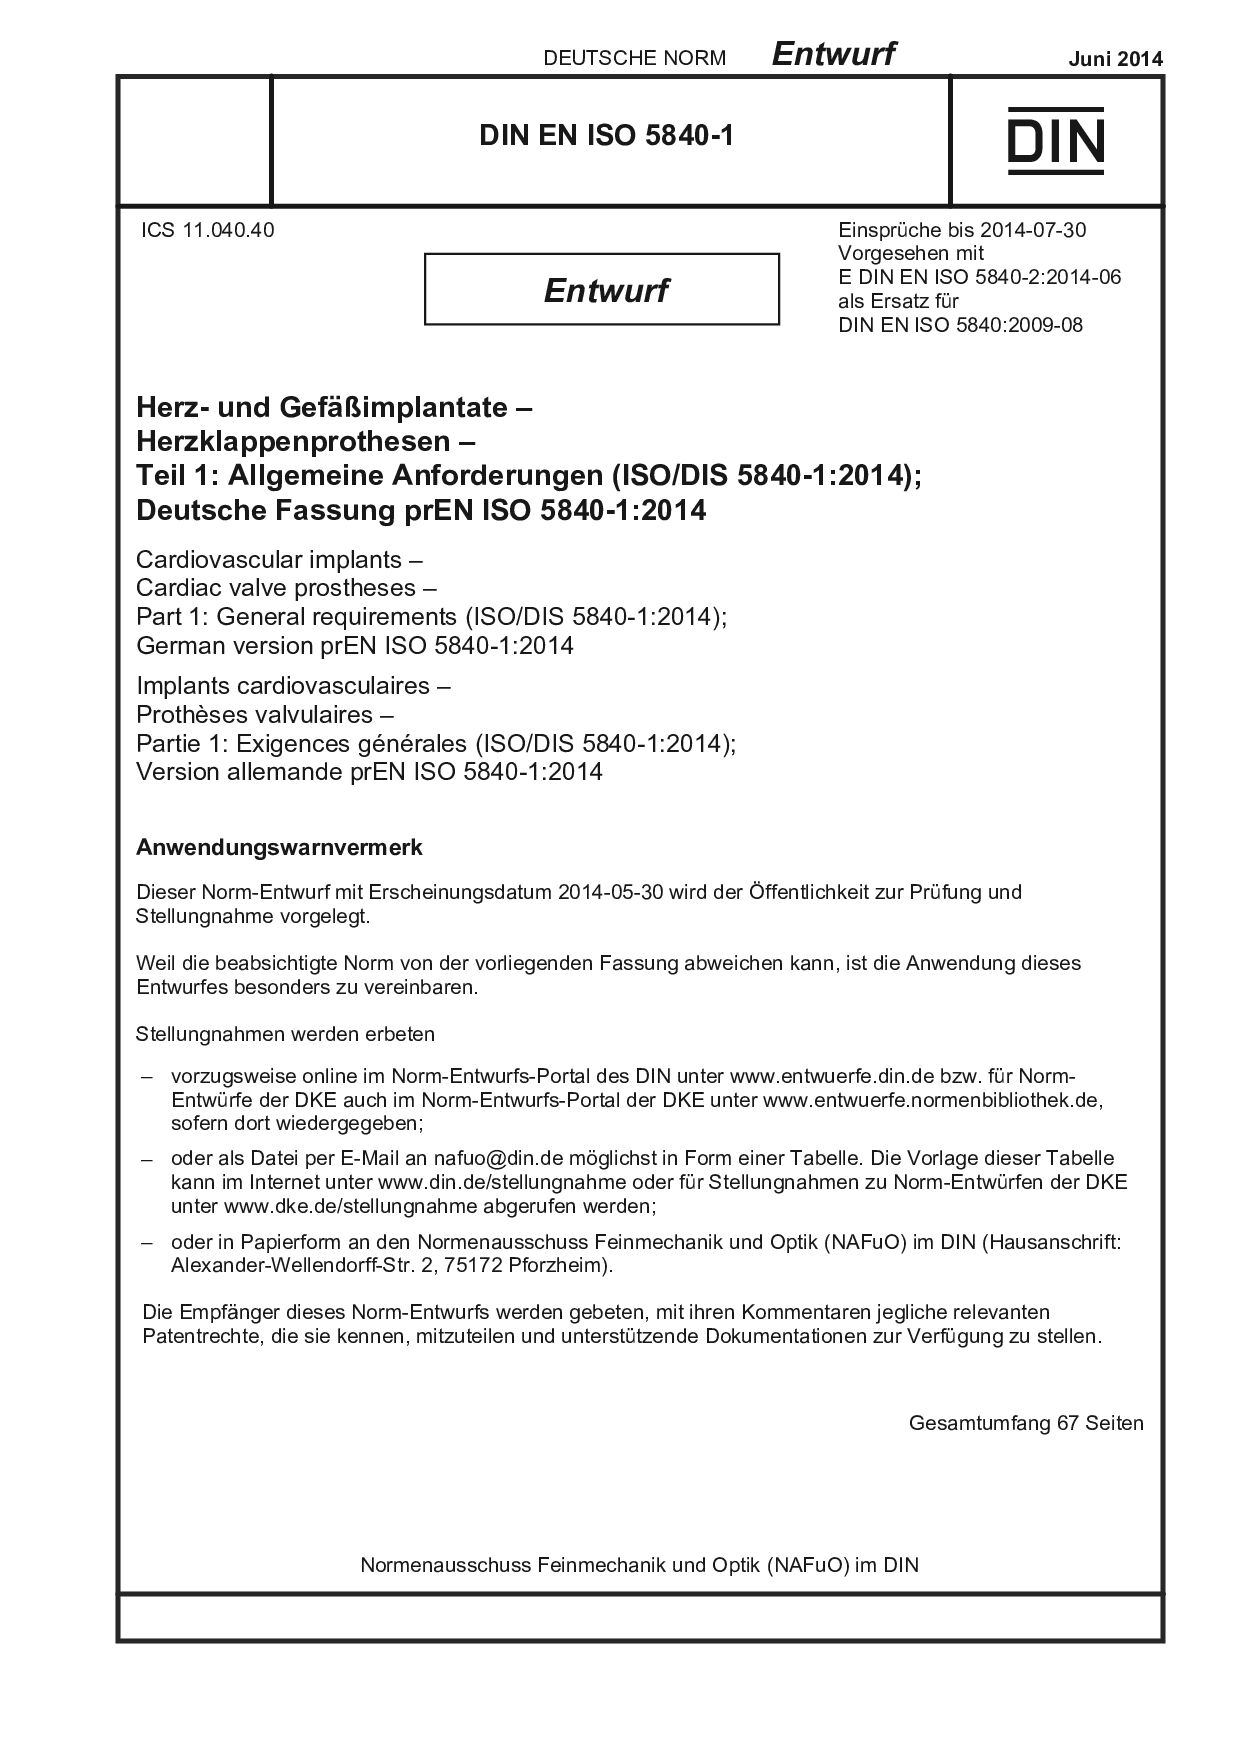 DIN EN ISO 5840-1 E:2014-06封面图